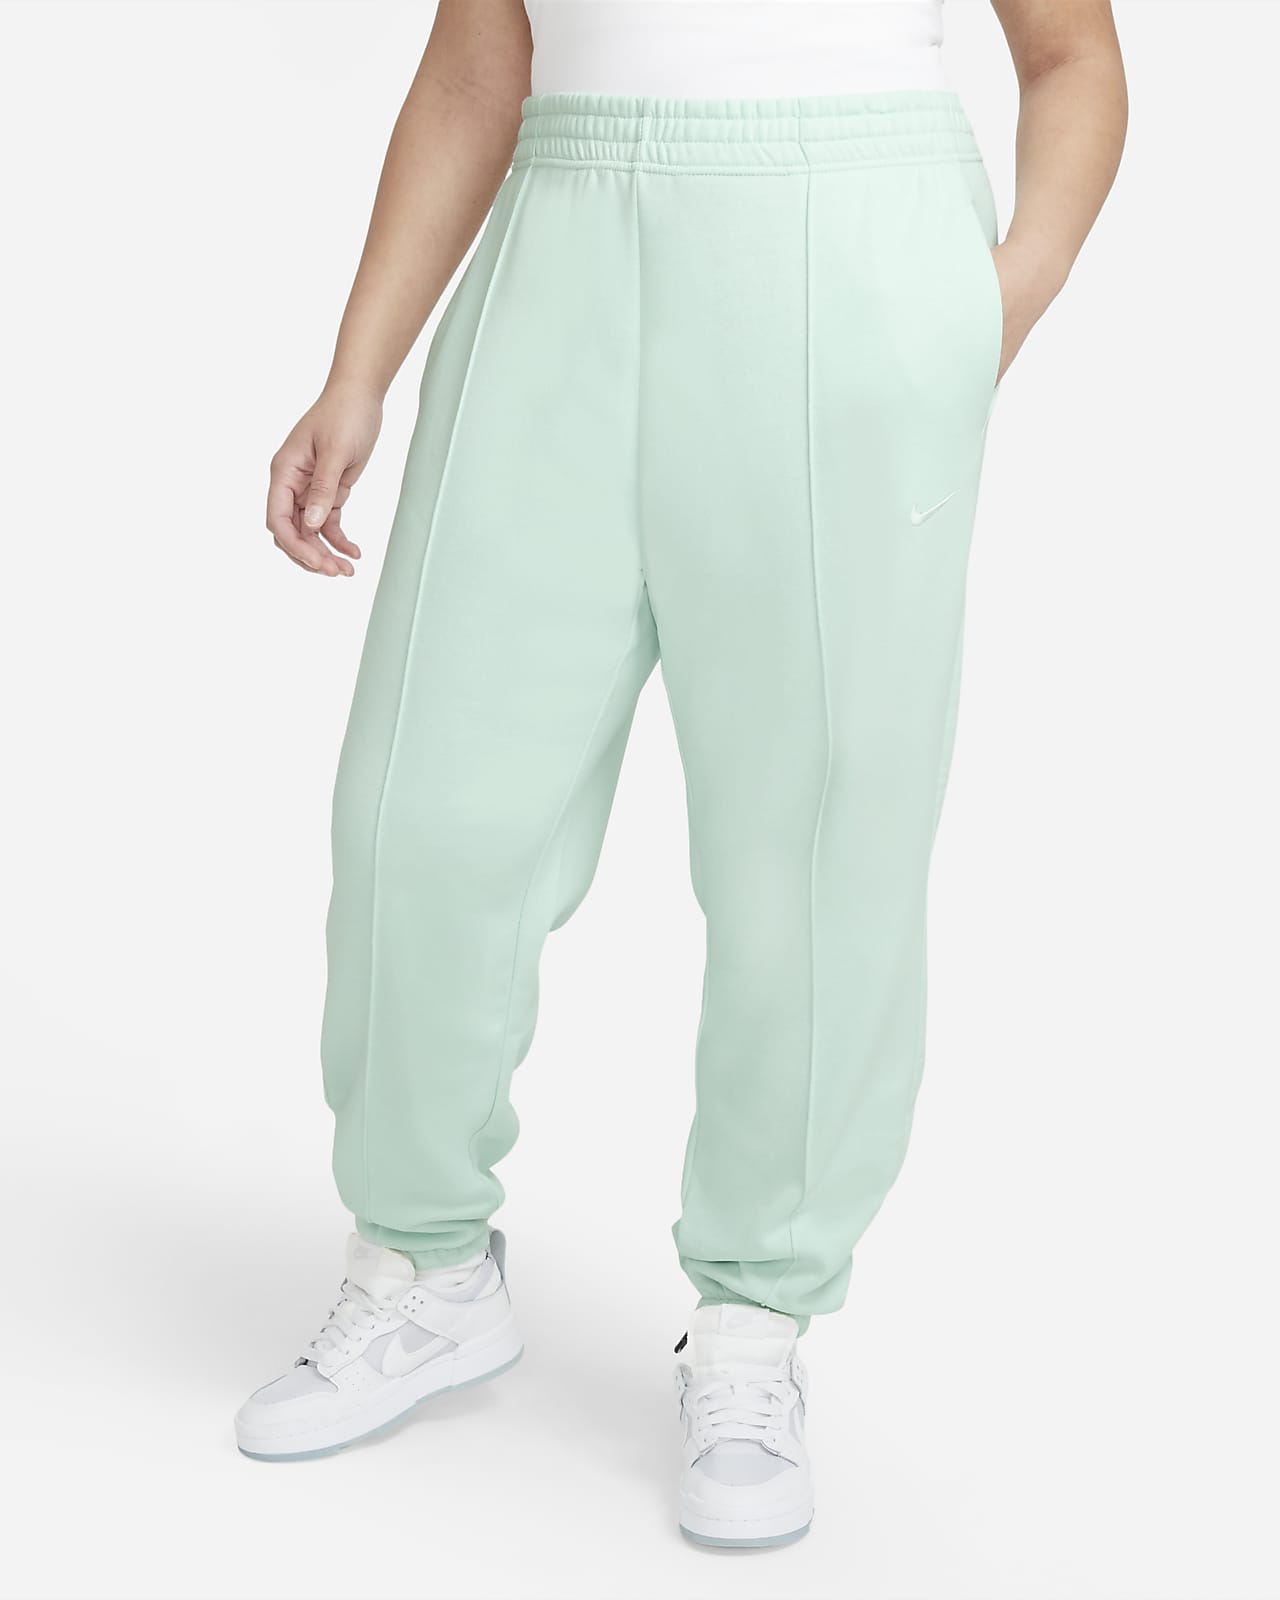 Nike Sportswear Trend Pantalón de tejido Fleece (Talla grande) - Mujer